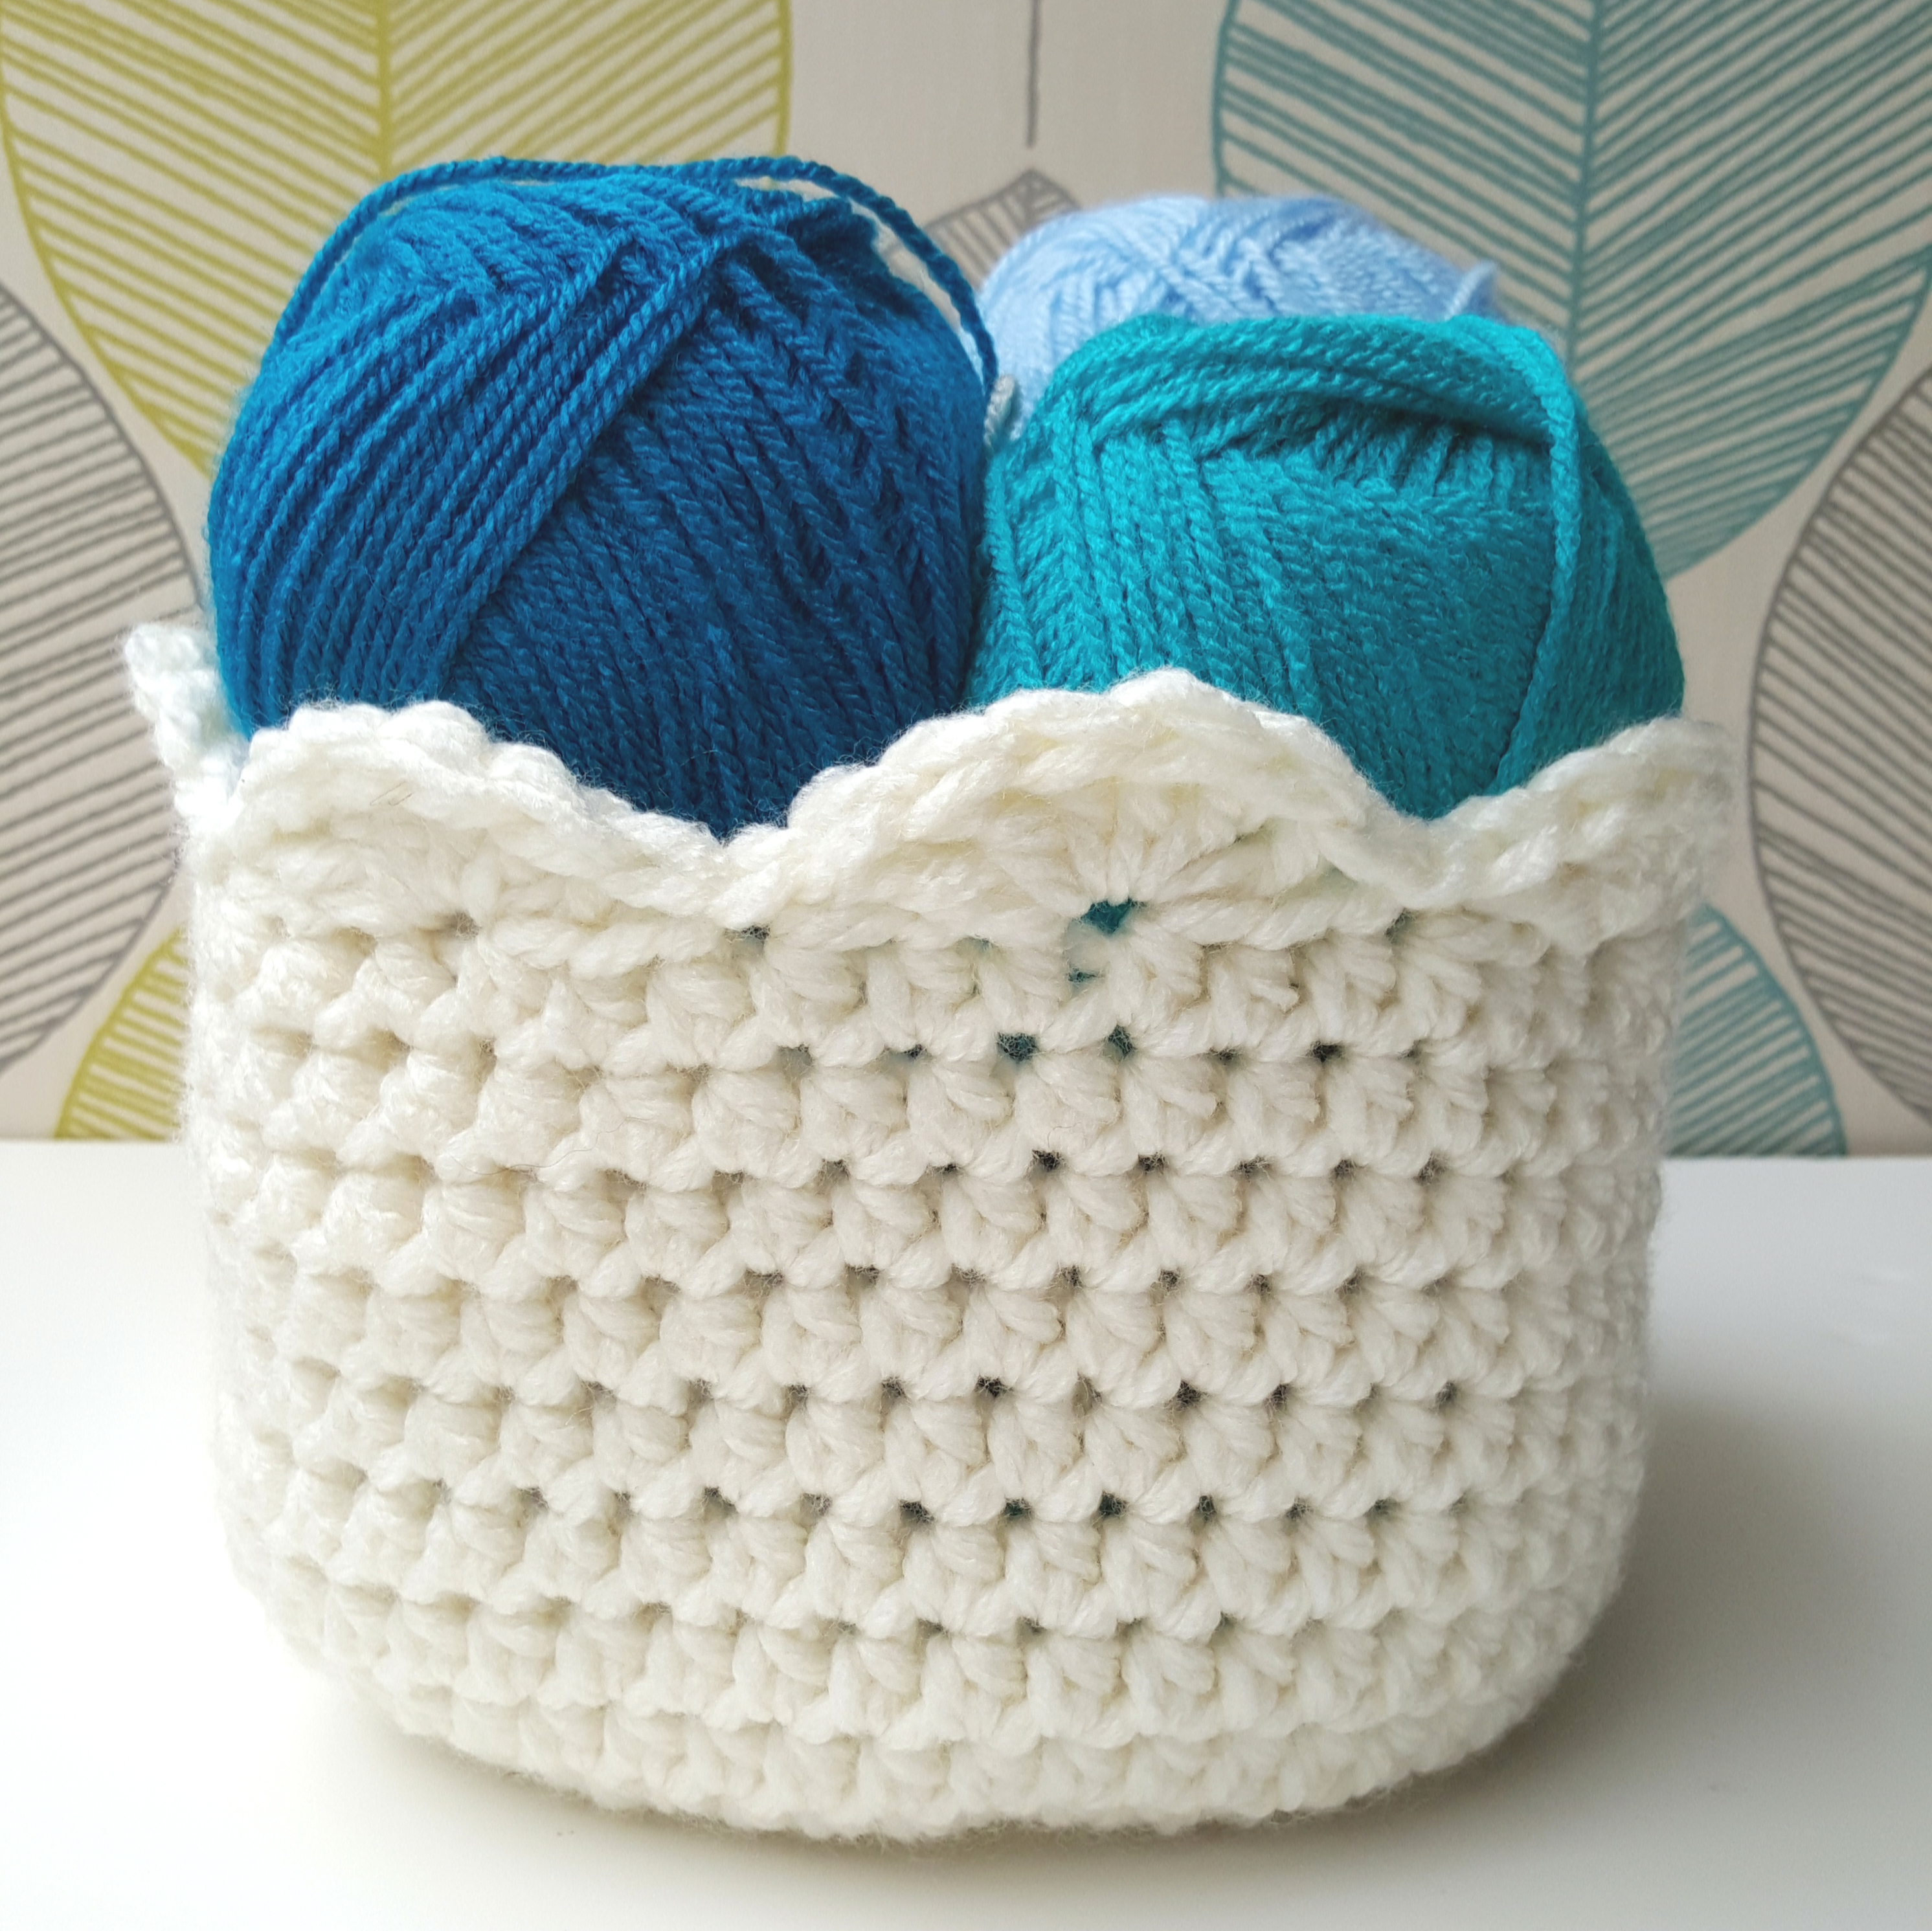 Crochet Basket Pattern How To Crochet A Basket Free Tutorial Pattern